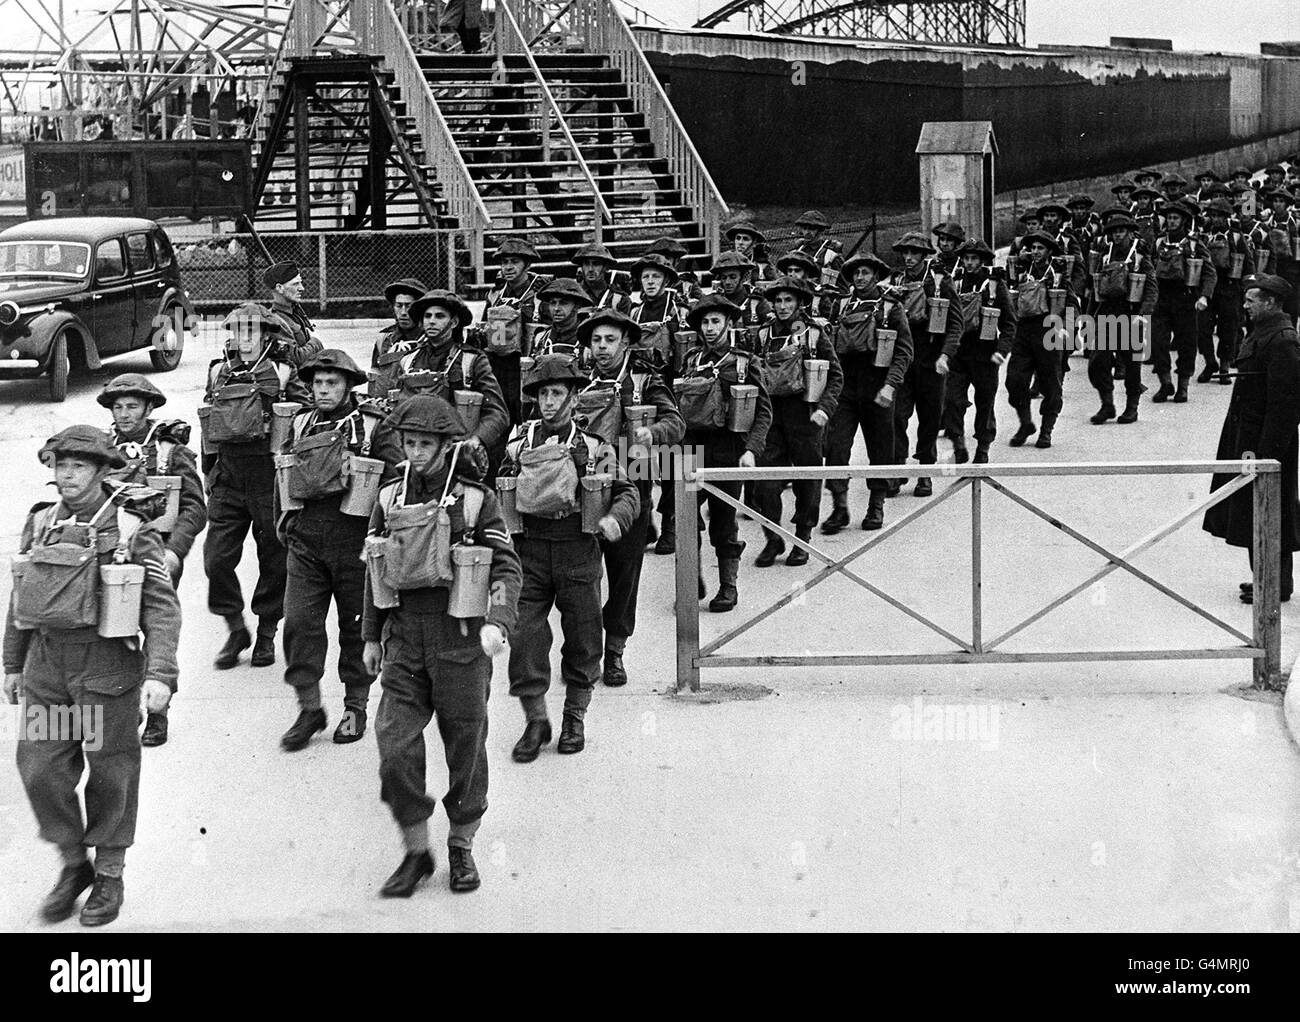 1940: Die Pioniere der britischen Armee verlassen ihr Lager an der Ostküste in voller Ausrüstung für einen marsch während des Zweiten Weltkriegs. Bild Teil der PA Zweiten Weltkrieg Sammlung. Stockfoto